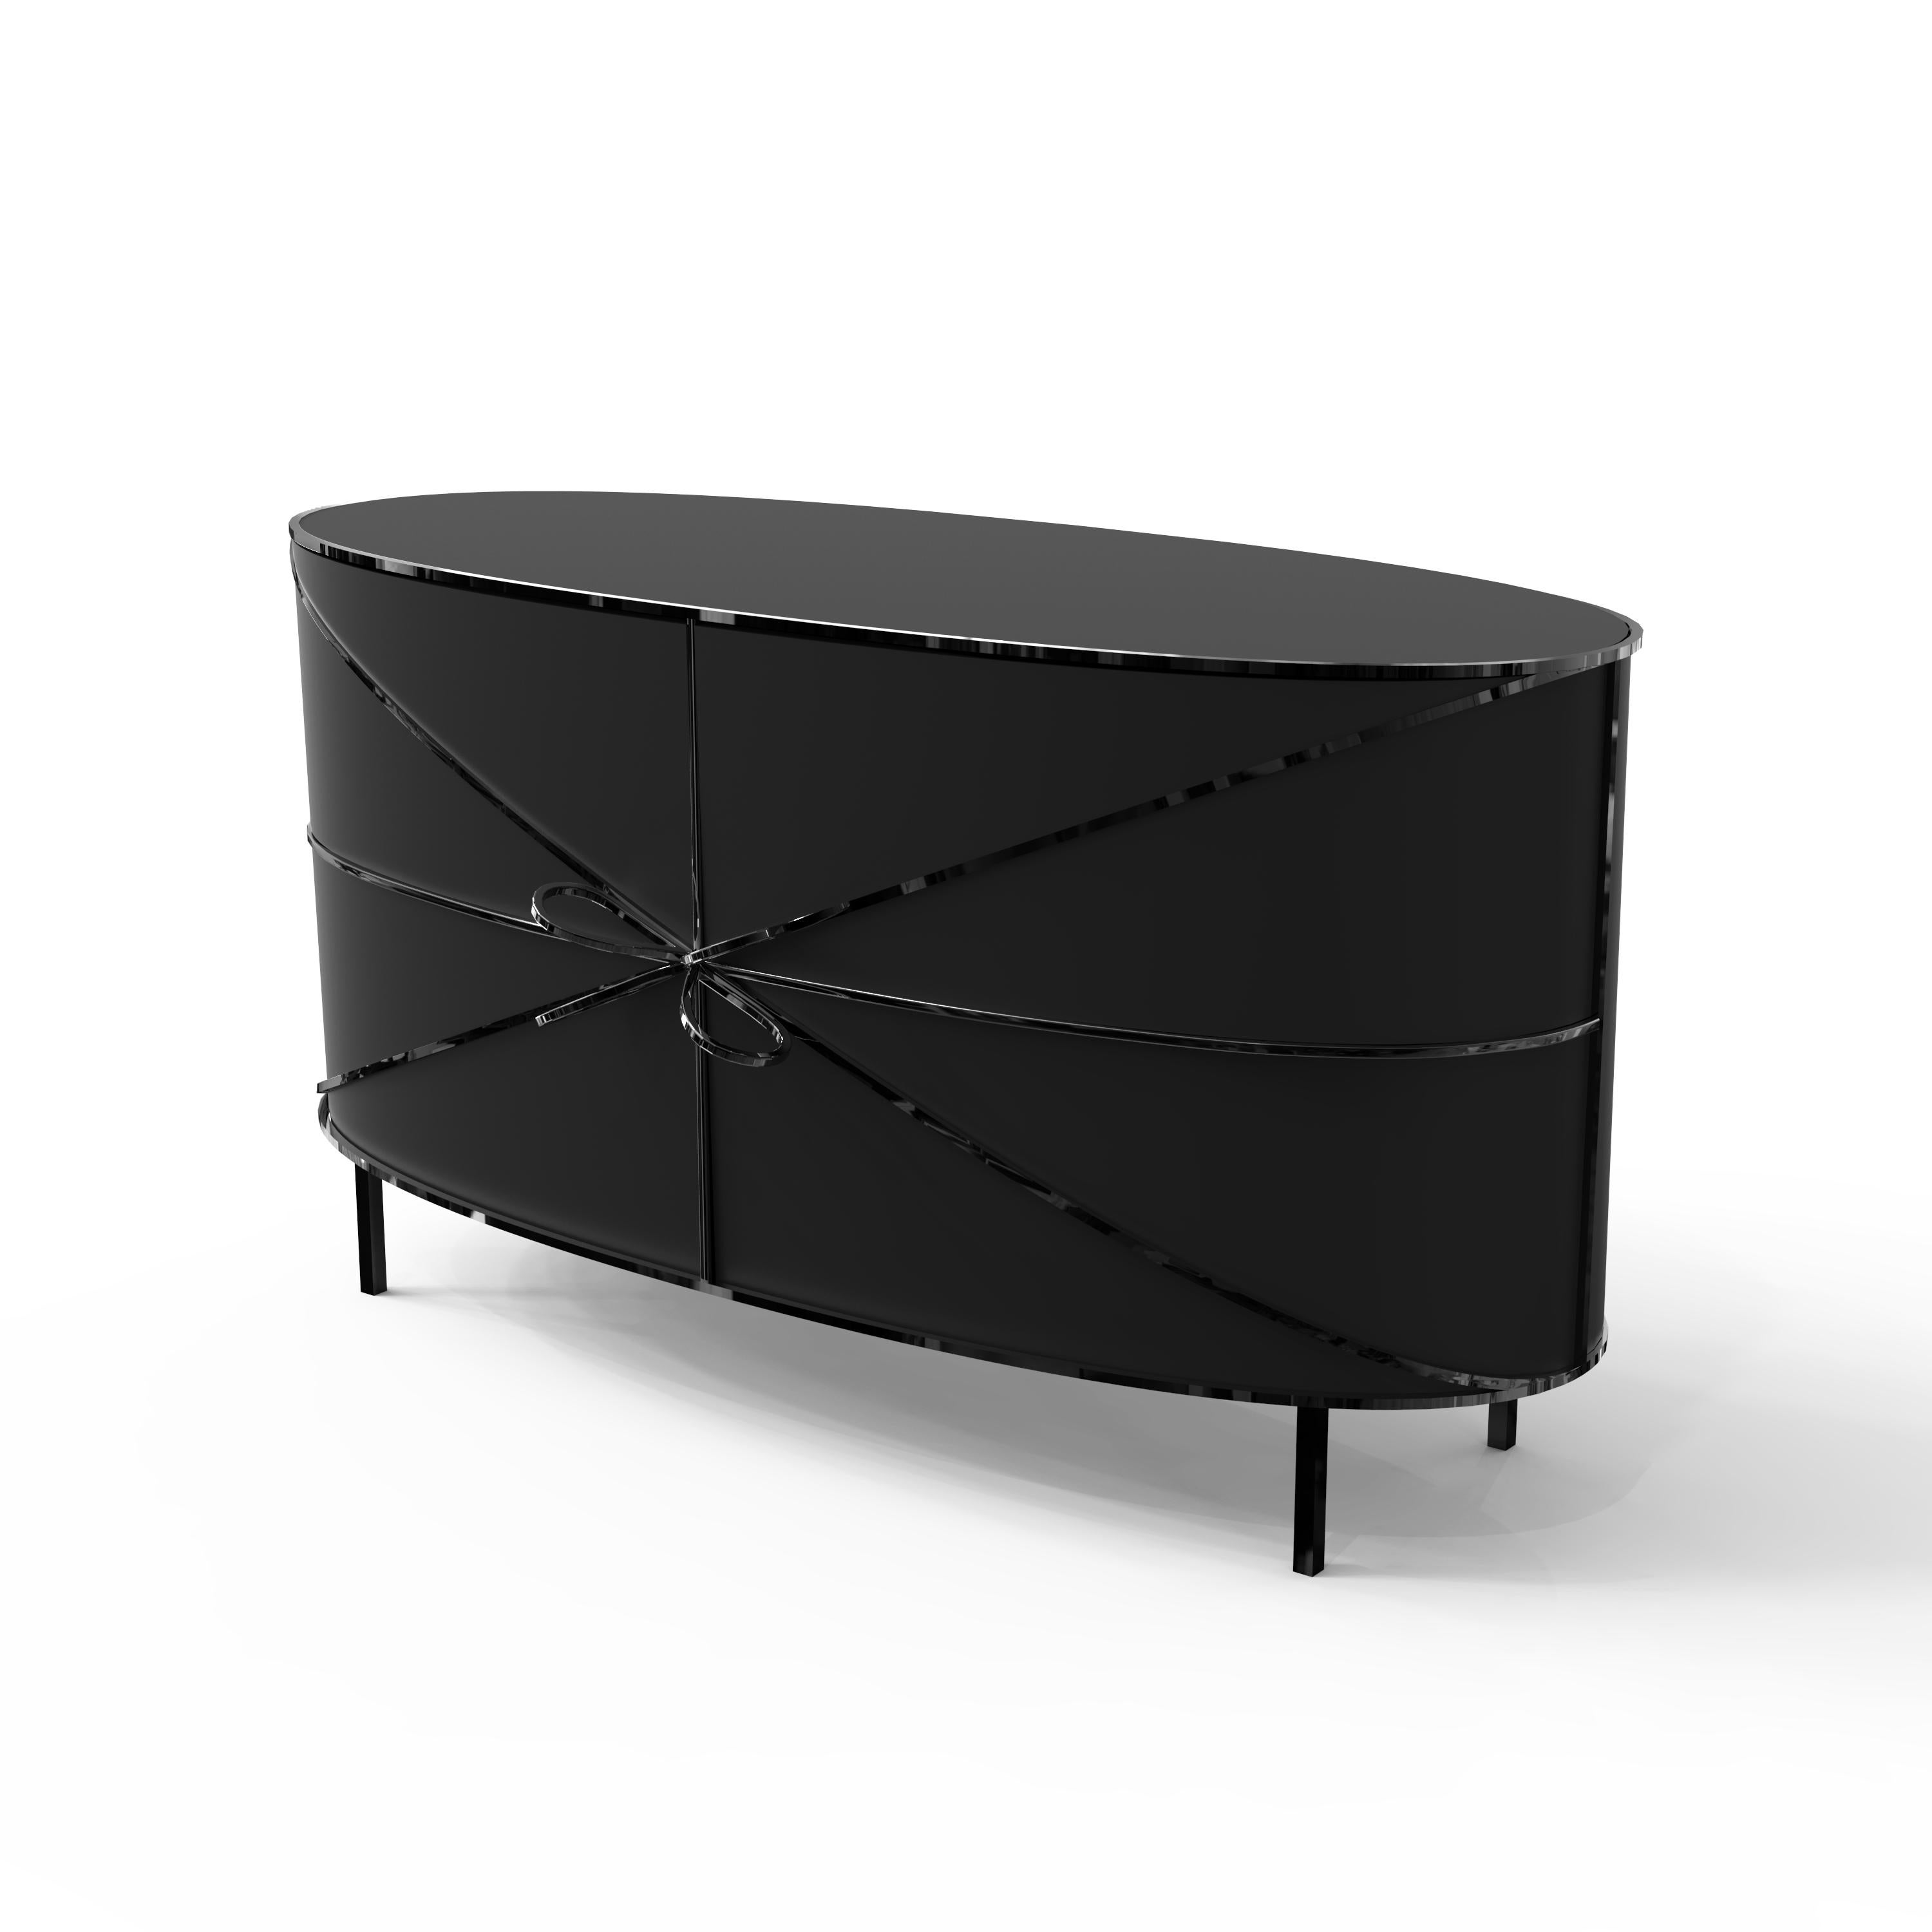 88 Secrets Black Sideboard de Nika Zupanc est un meuble élégant aux lignes sensuelles et féminines avec de luxueuses garnitures en métal noir. Une pièce maîtresse dans tout espace intérieur !

Nika Zupanc, designer slovène de renom, n'hésite jamais